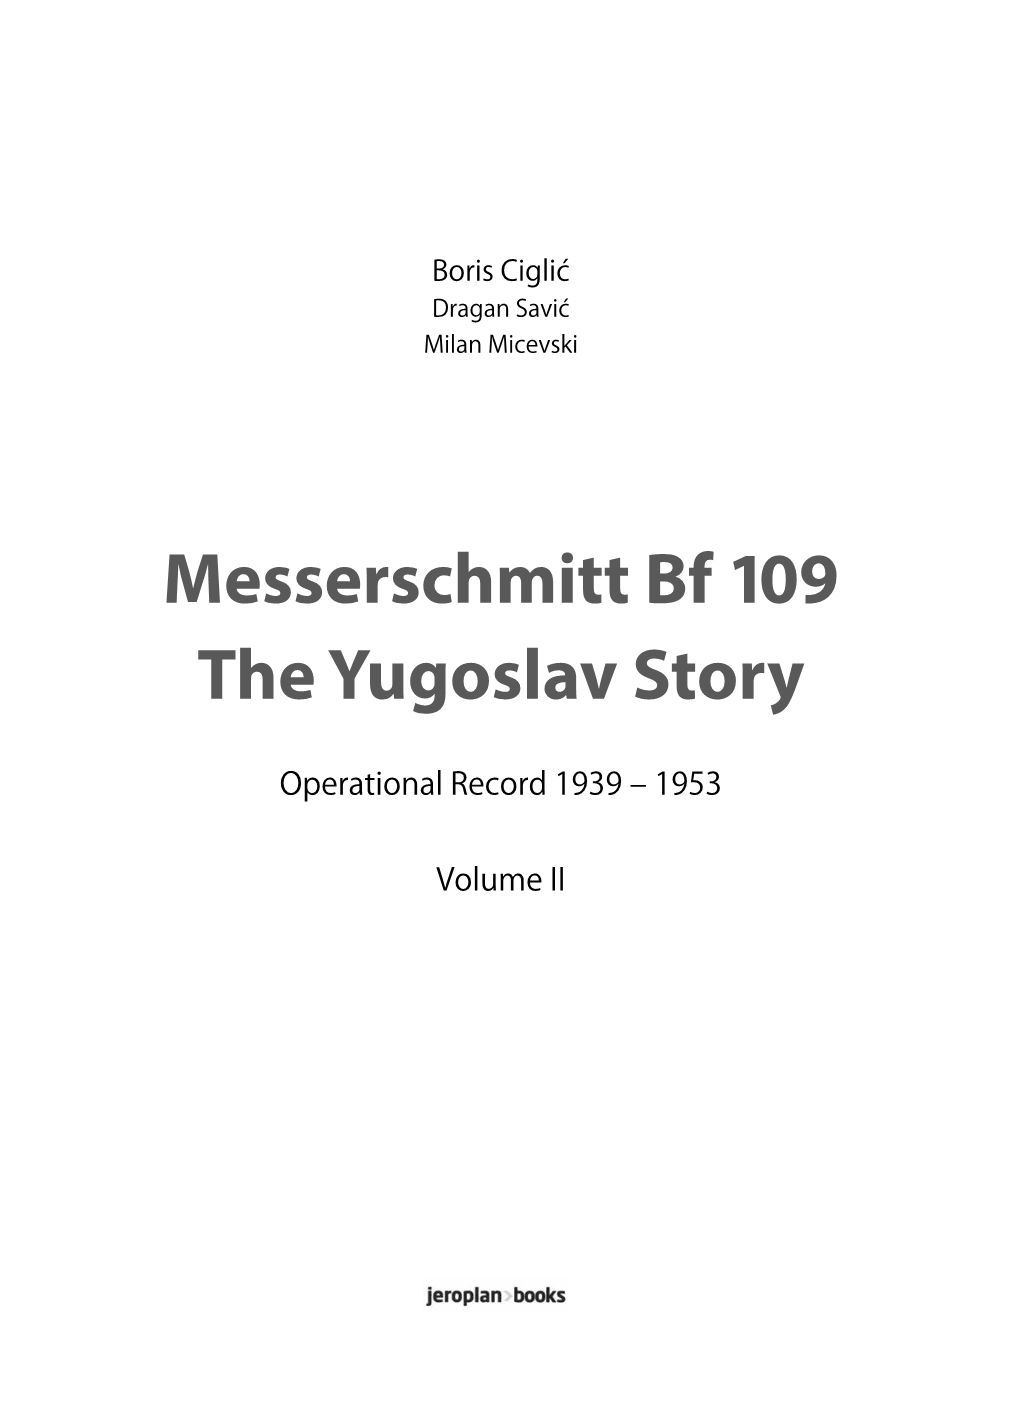 Messerschmitt Bf 109 the Yugoslav Story